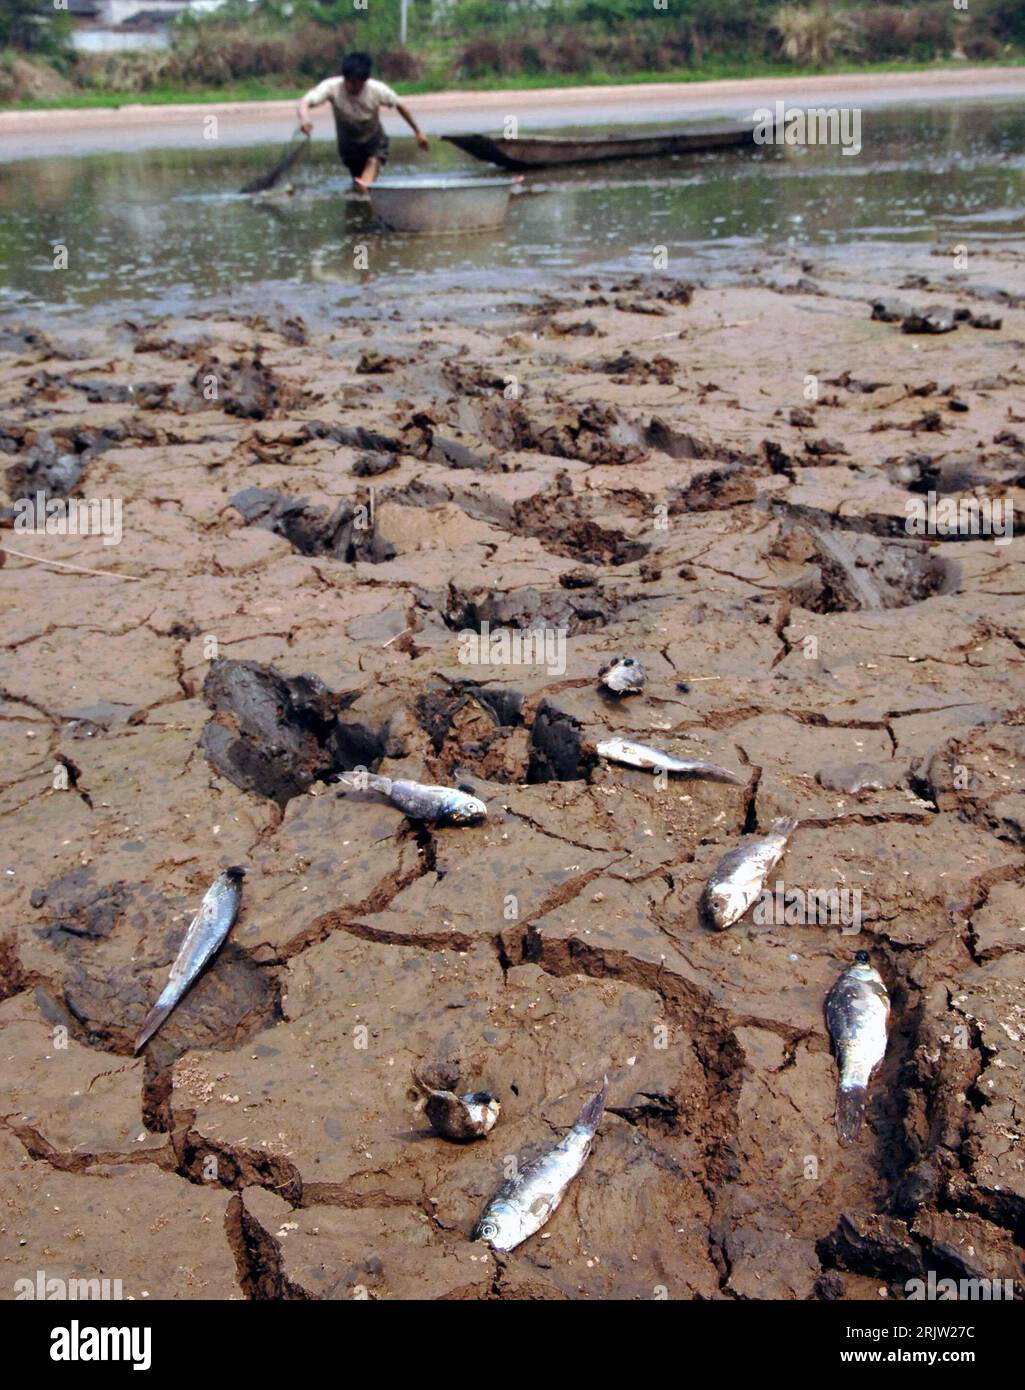 Bildnummer: 51824205  Datum: 29.03.2007  Copyright: imago/Xinhua Tote Fische an einem fast ausgetrockneten See in Chengdu - China - wegen anhaltender Dürre herrscht Wasserknappheit - PUBLICATIONxNOTxINxCHN, Objekte; 2007, Chengdu, Dürre, Trockenheit, Mangel, Wassermangel, Wasserknappheit, ausgetrocknet, trocken, tot, toter, Fisch, Fischsterben; , hoch, Kbdig, Gruppenbild, China,  , , , o0 Wetter Stock Photo